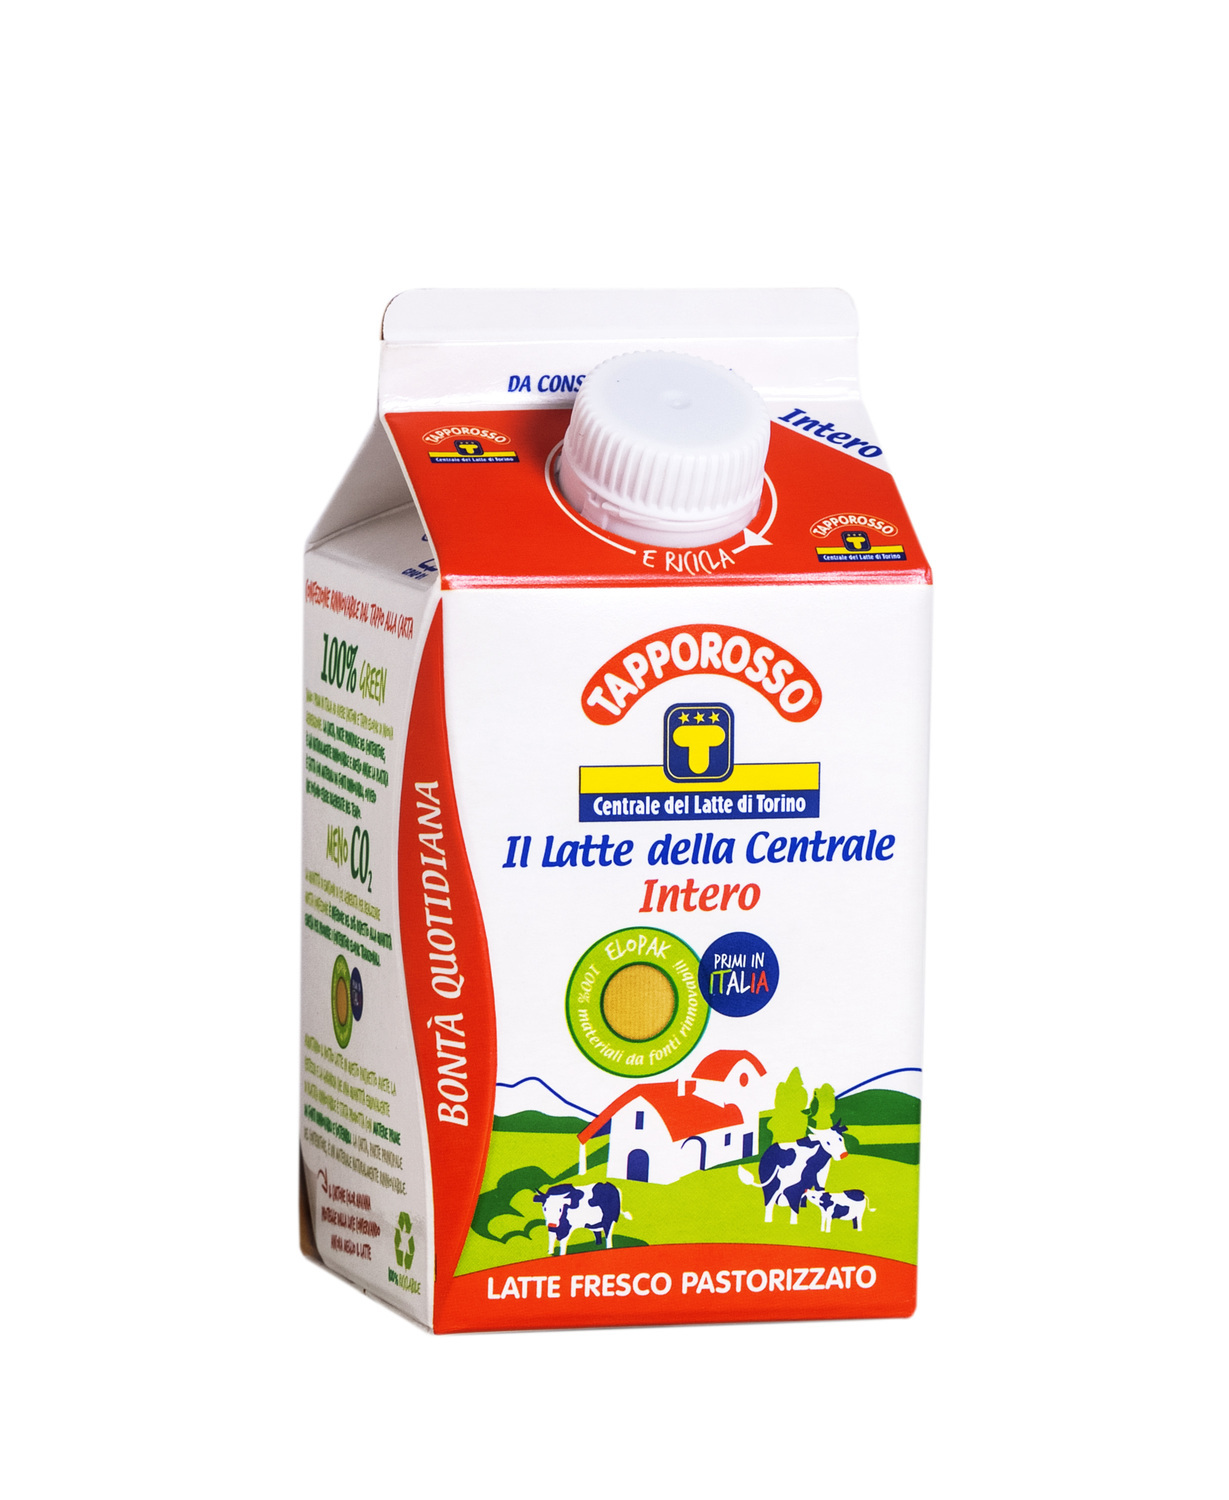 Centrale del latte di Torino & c.: il cda approva i risultati consolidati al 30 giugno 2015